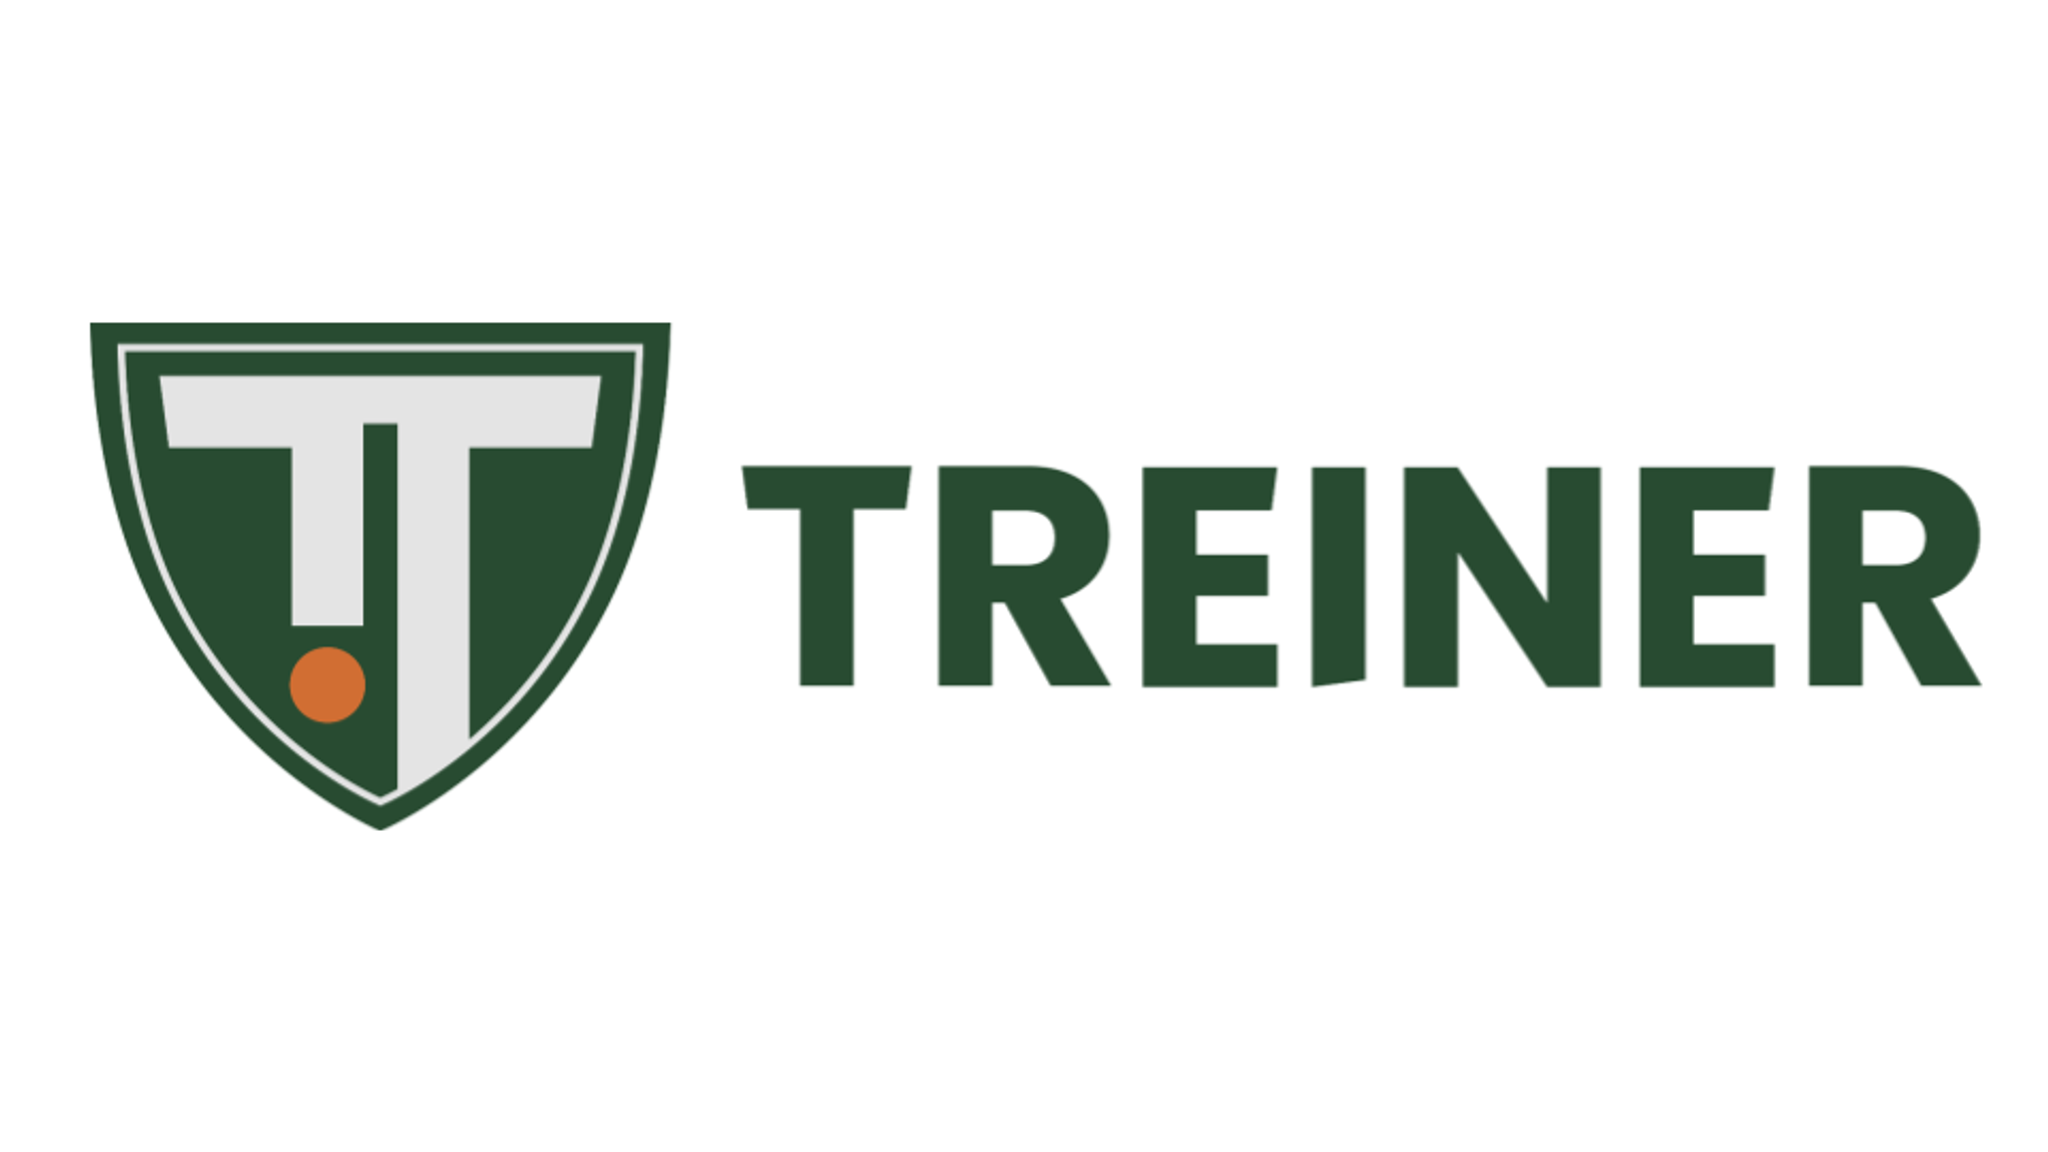 Meet Treiner - Sports and EventTech Program 2022 Cohort